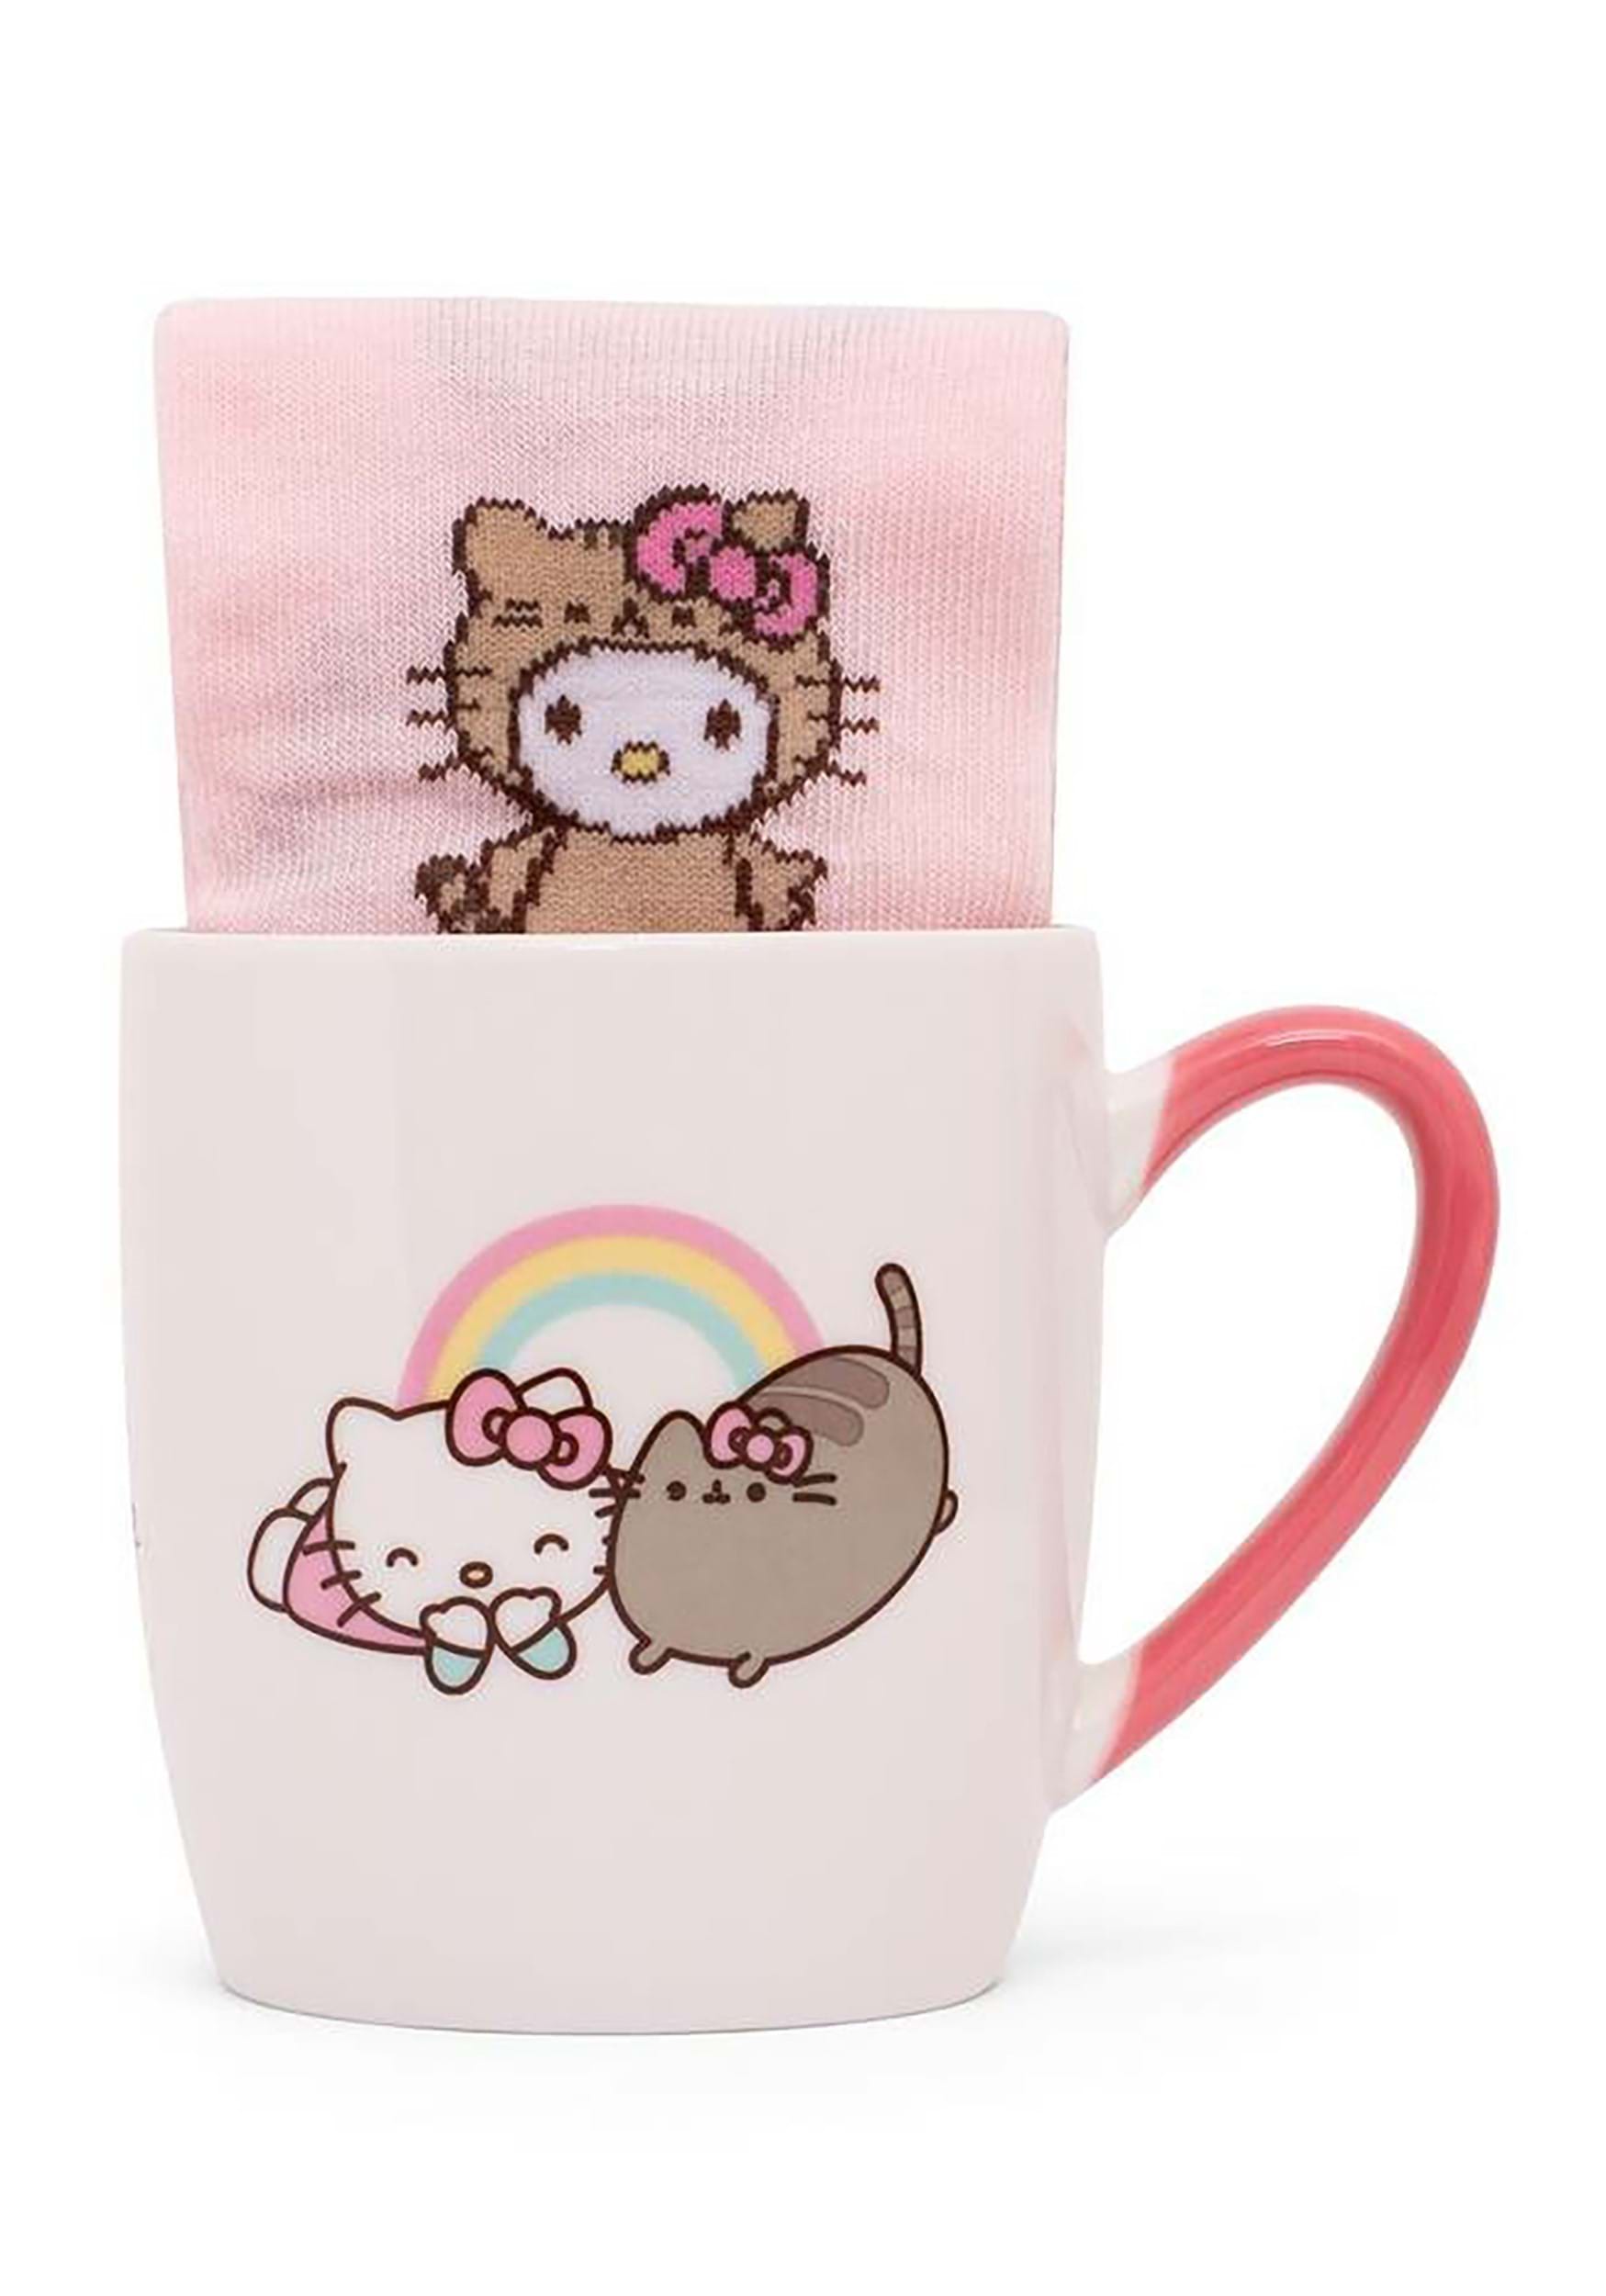 Hello Kitty x Pusheen Sock & Mug Gift Set